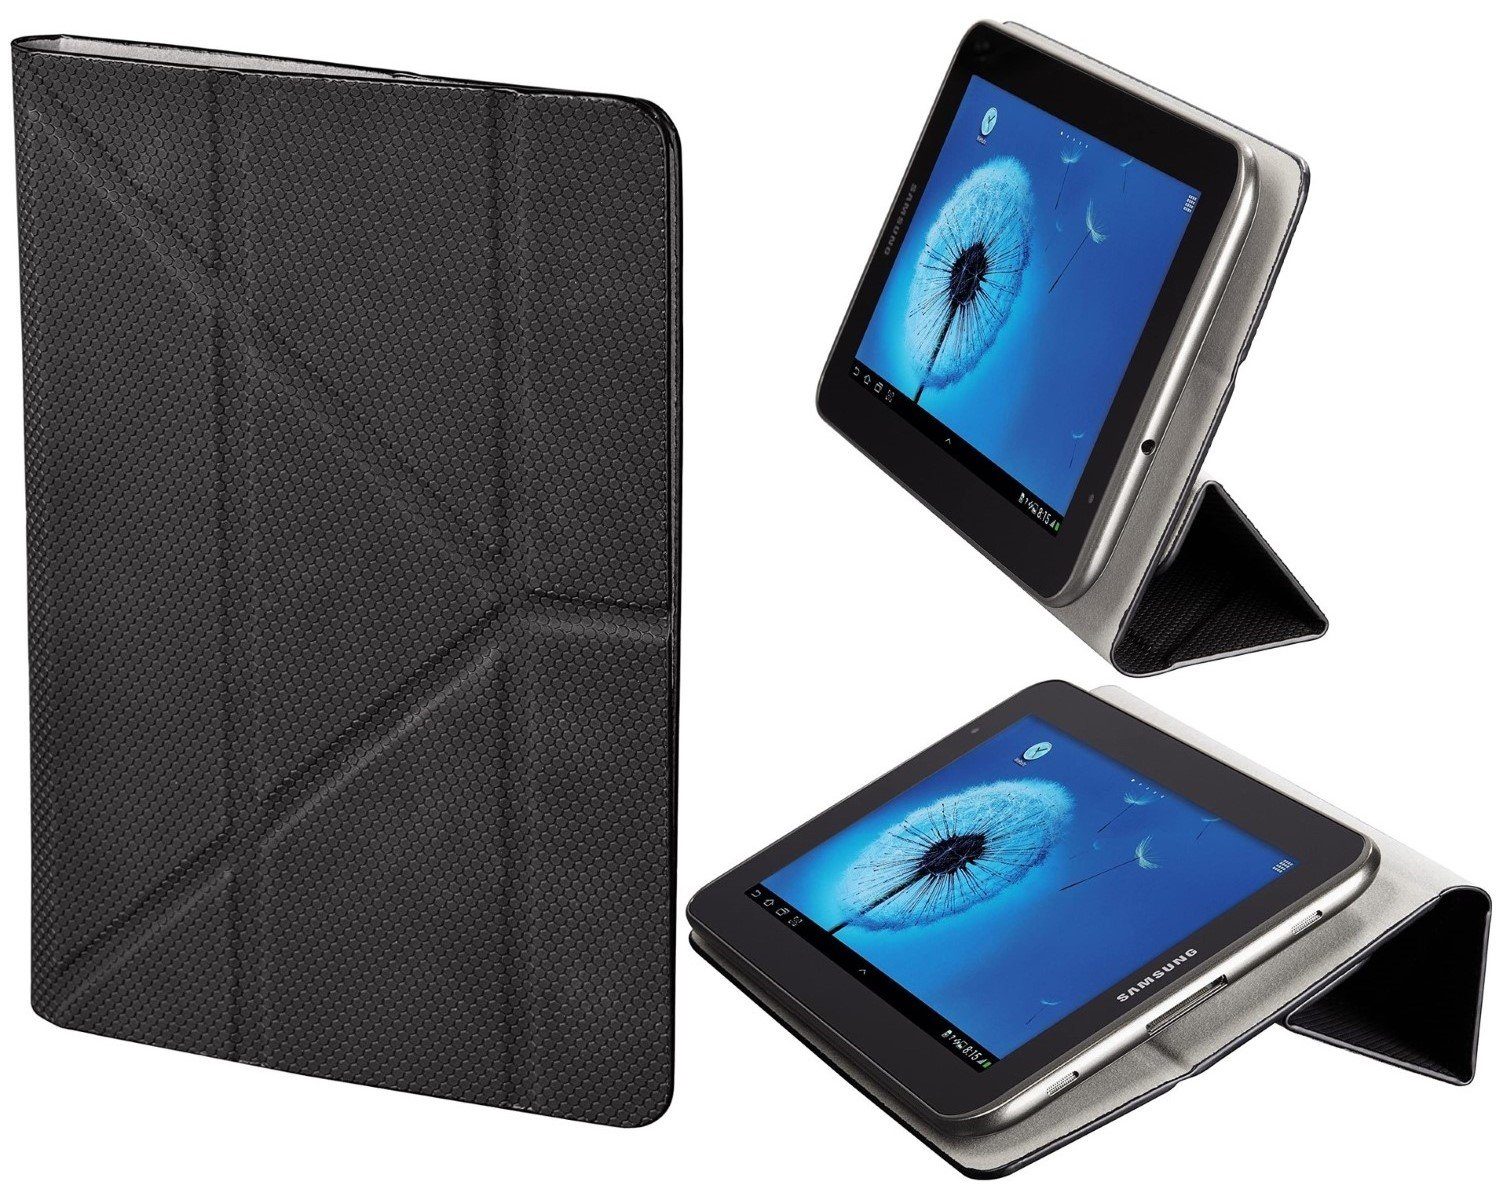 Hama Tablet-Hülle Klapp-Tasche 7" Schutz-Hülle Cover Case Suction, Universal Etui für 7 Zoll eReader eBook-Reader für Amazon Kindle etc.